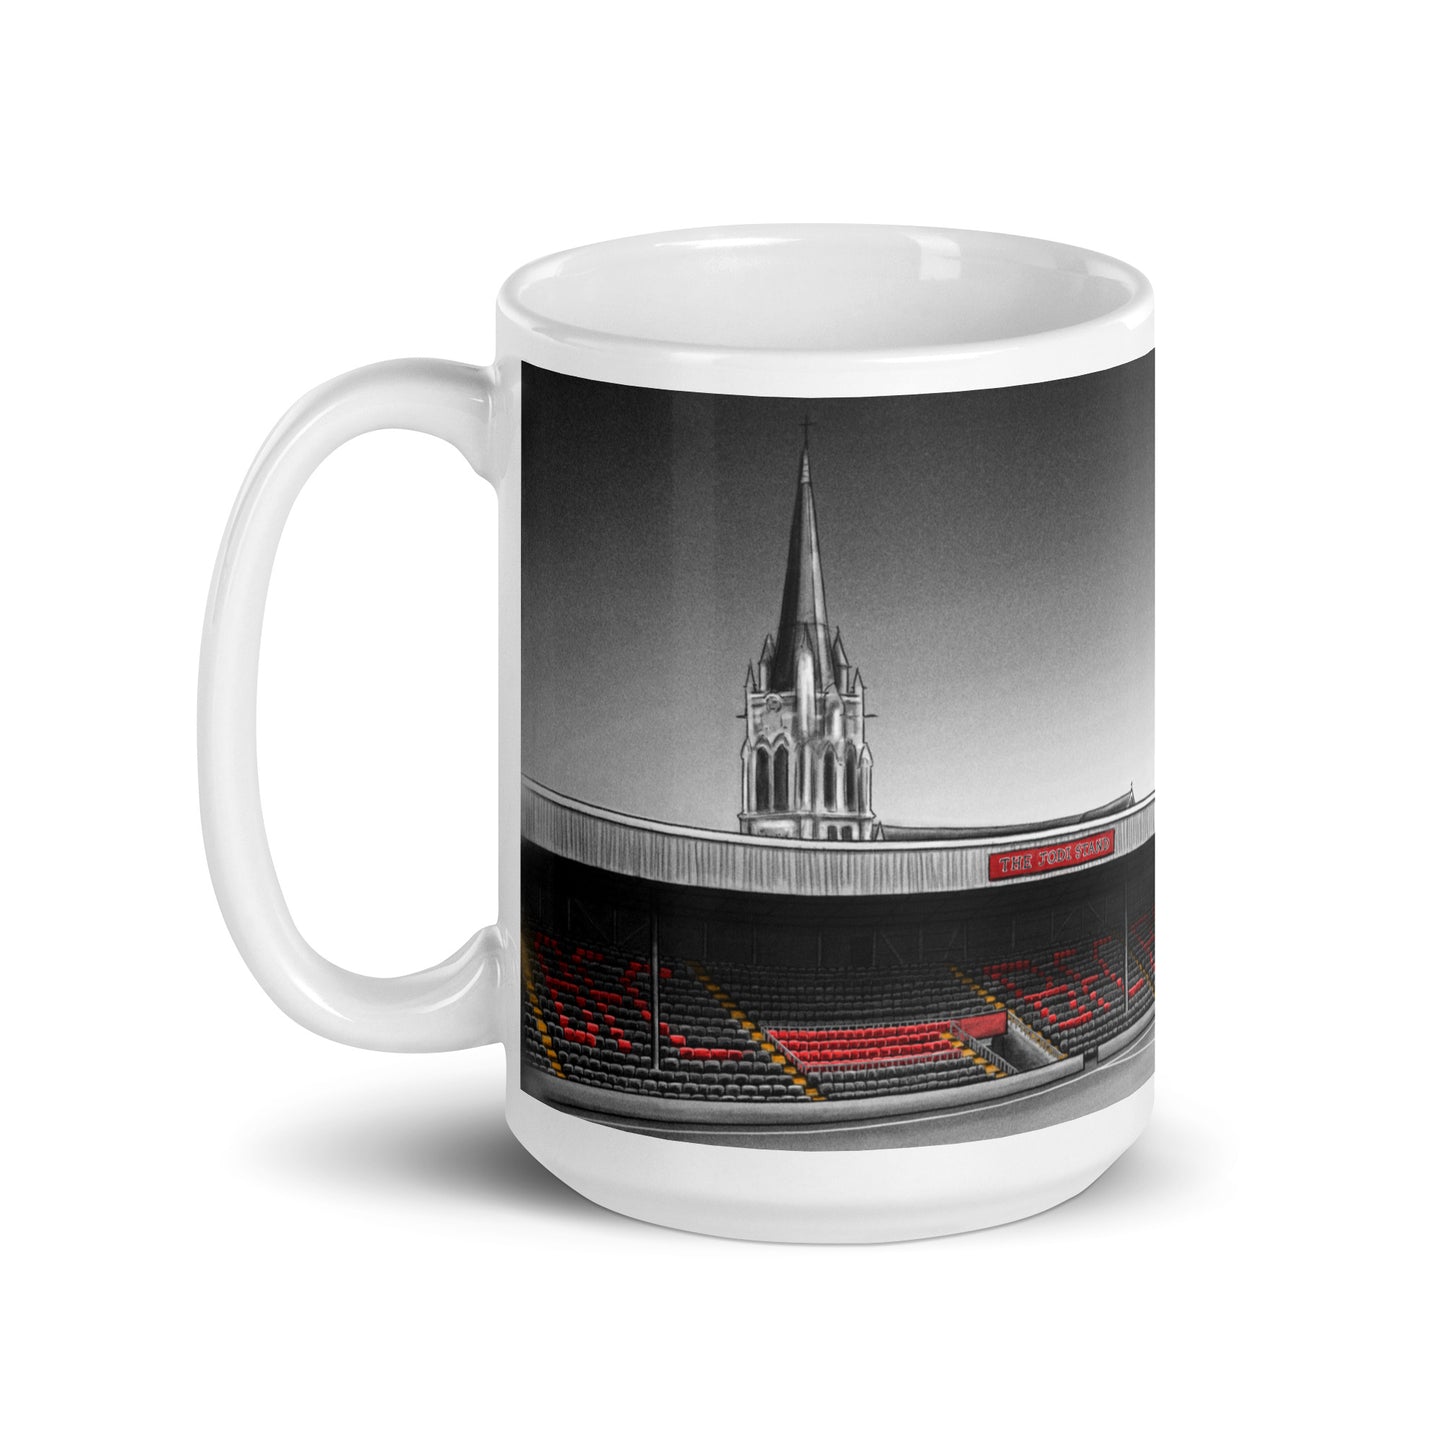 Dalymount Park Bohemian FC glossy mug